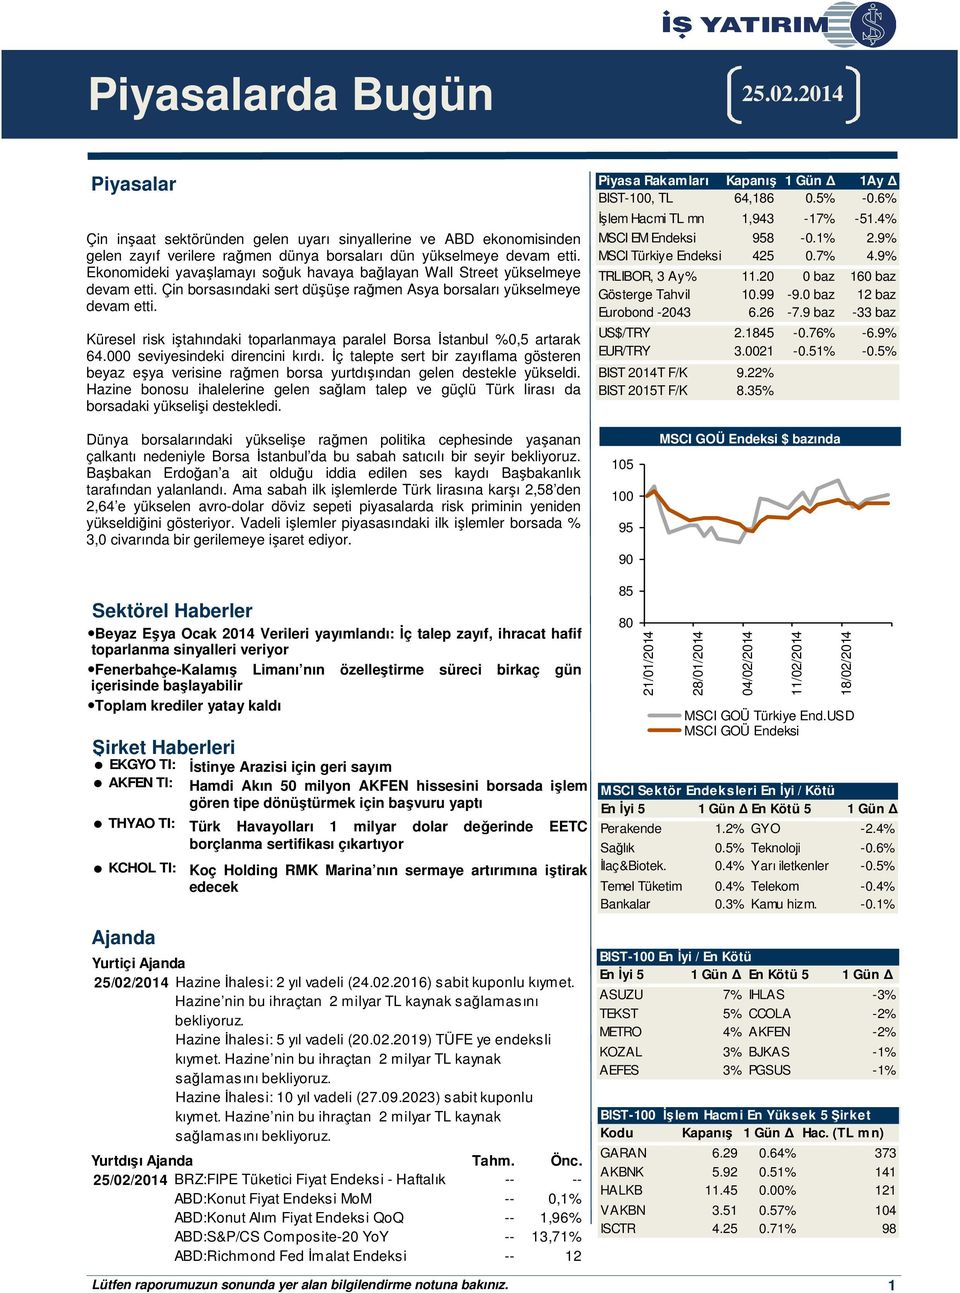 Küresel risk iştahındaki toparlanmaya paralel Borsa İstanbul %0,5 artarak 64.000 seviyesindeki direncini kırdı.